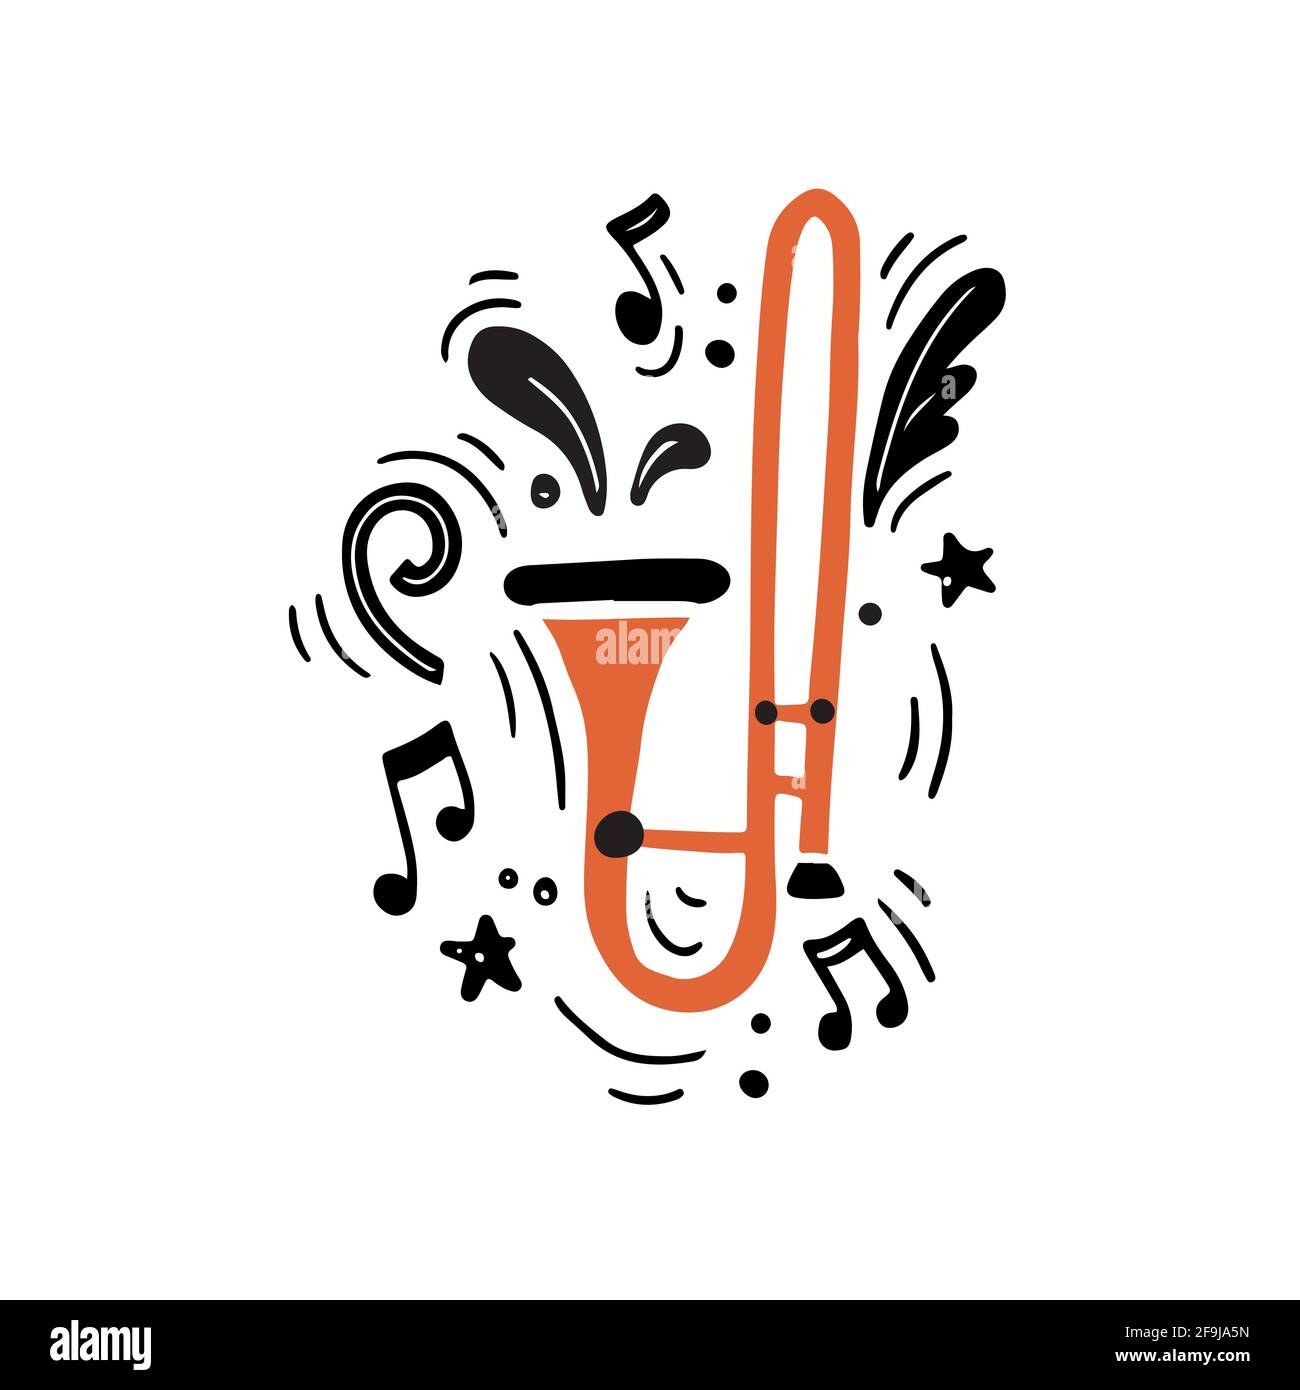 Illustration vectorielle minimaliste dessinée à la main en laiton traditionnel de style plat instrument de couleur orange vif appelé trombone jouant de la musique forte au milieu des notes noires et de la musique créative Illustration de Vecteur